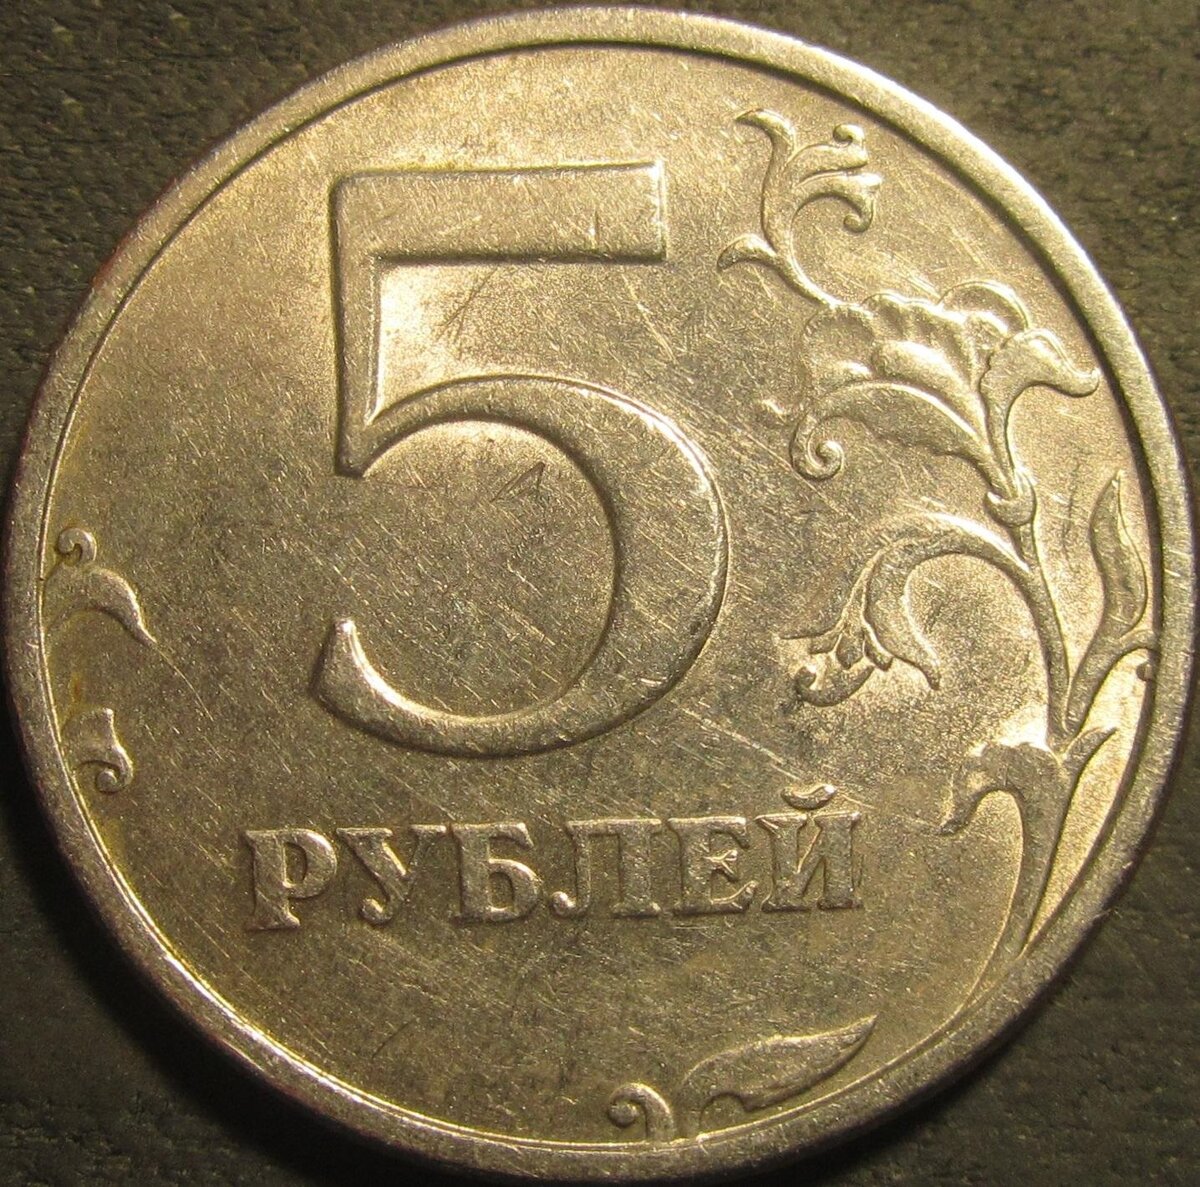 5 Рублей 1998 ММД. 50 Рублей 1998. 5 Рублей найденная. 2 Рубль редкие 2014 года м знак приспущен.